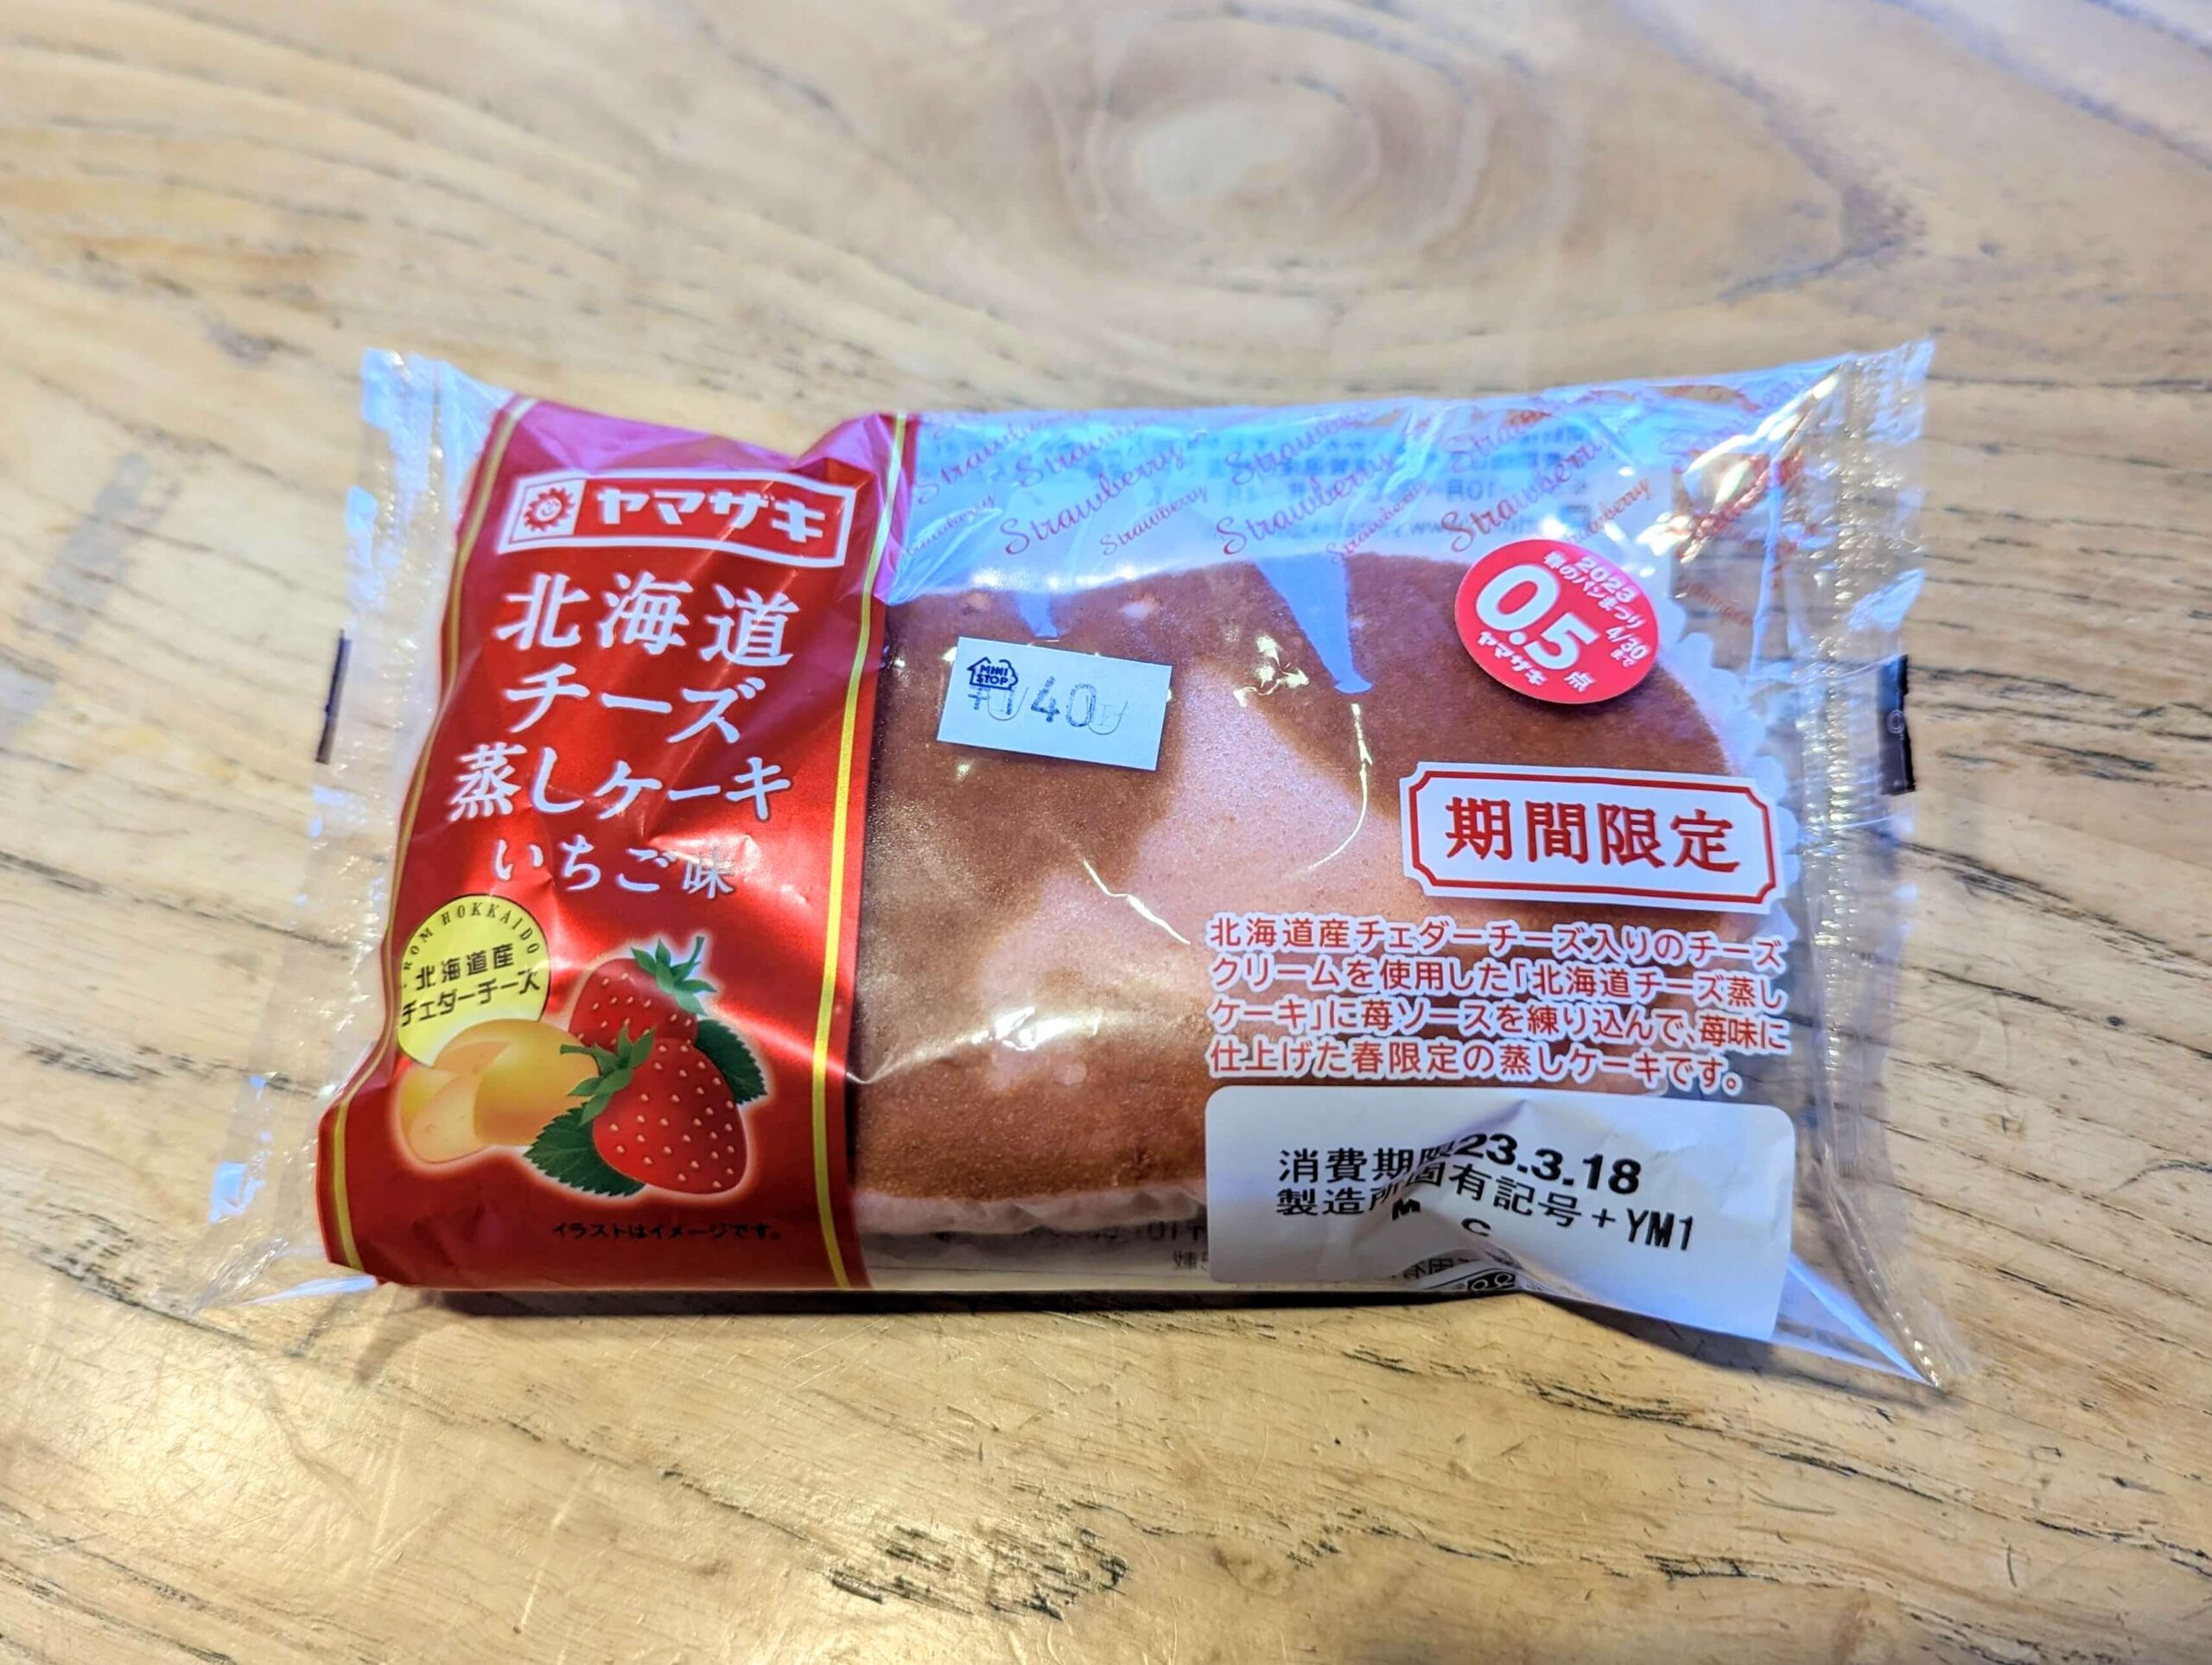 山崎製パン「北海道チーズ蒸しケーキいちご味」 (4)